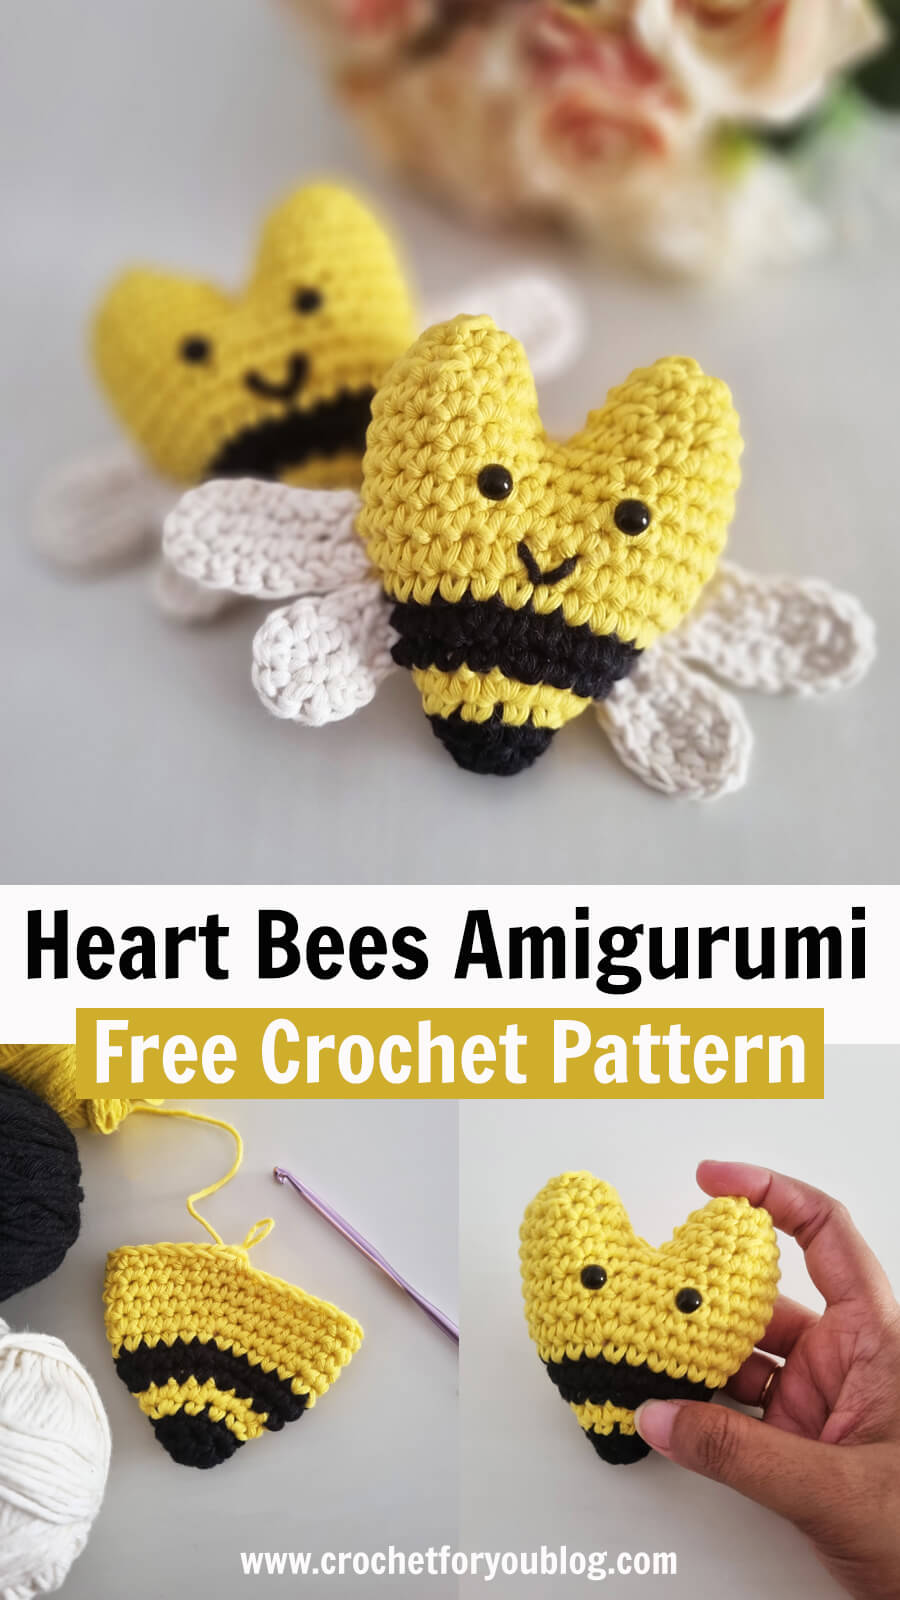 Crochet Heart Amigurumi